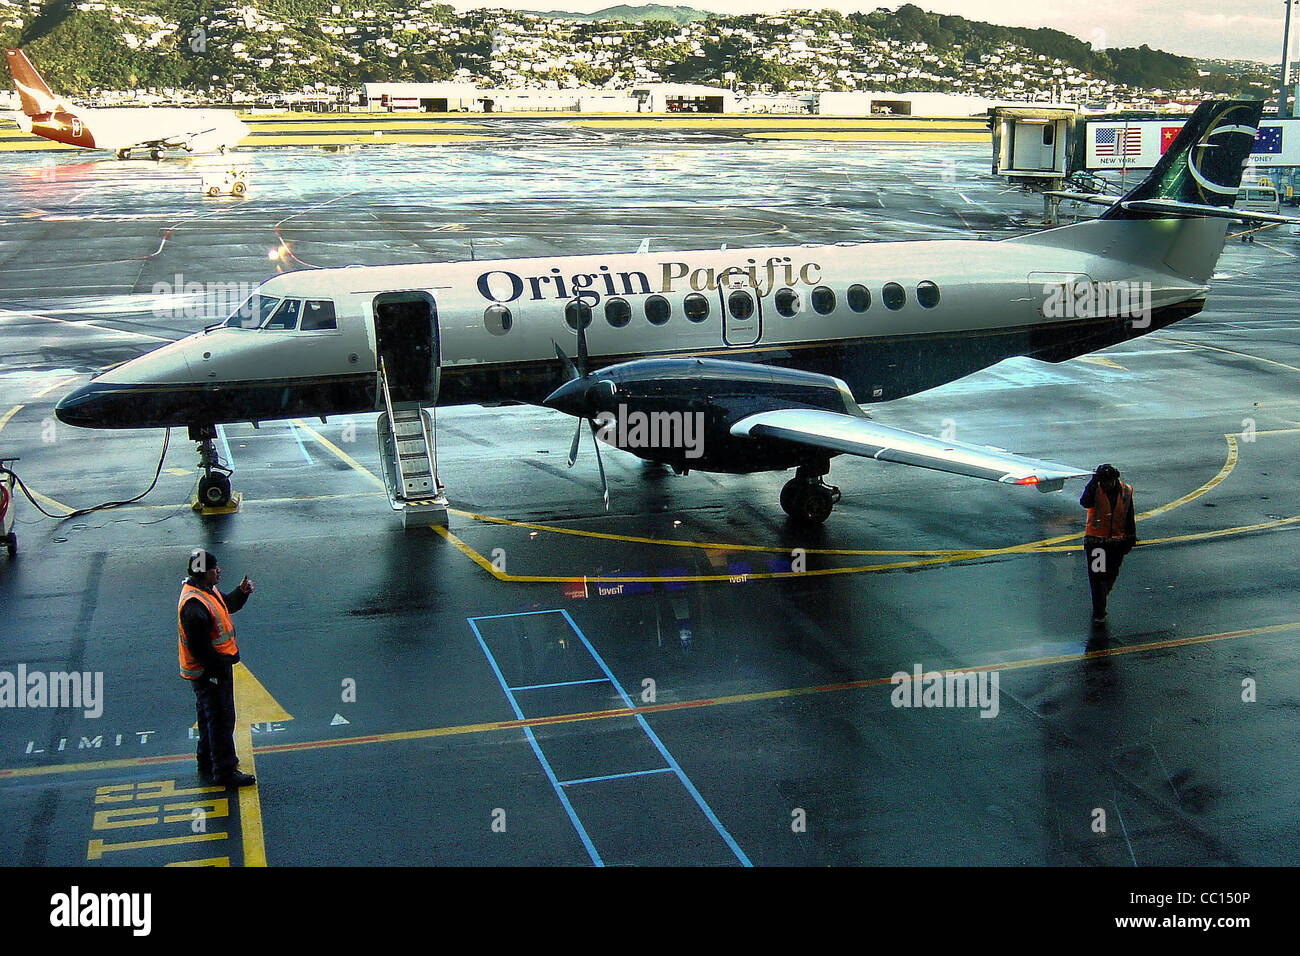 Avion Jetstream pacifique d'origine, l'Aéroport de Wellington, juin 2004 Banque D'Images